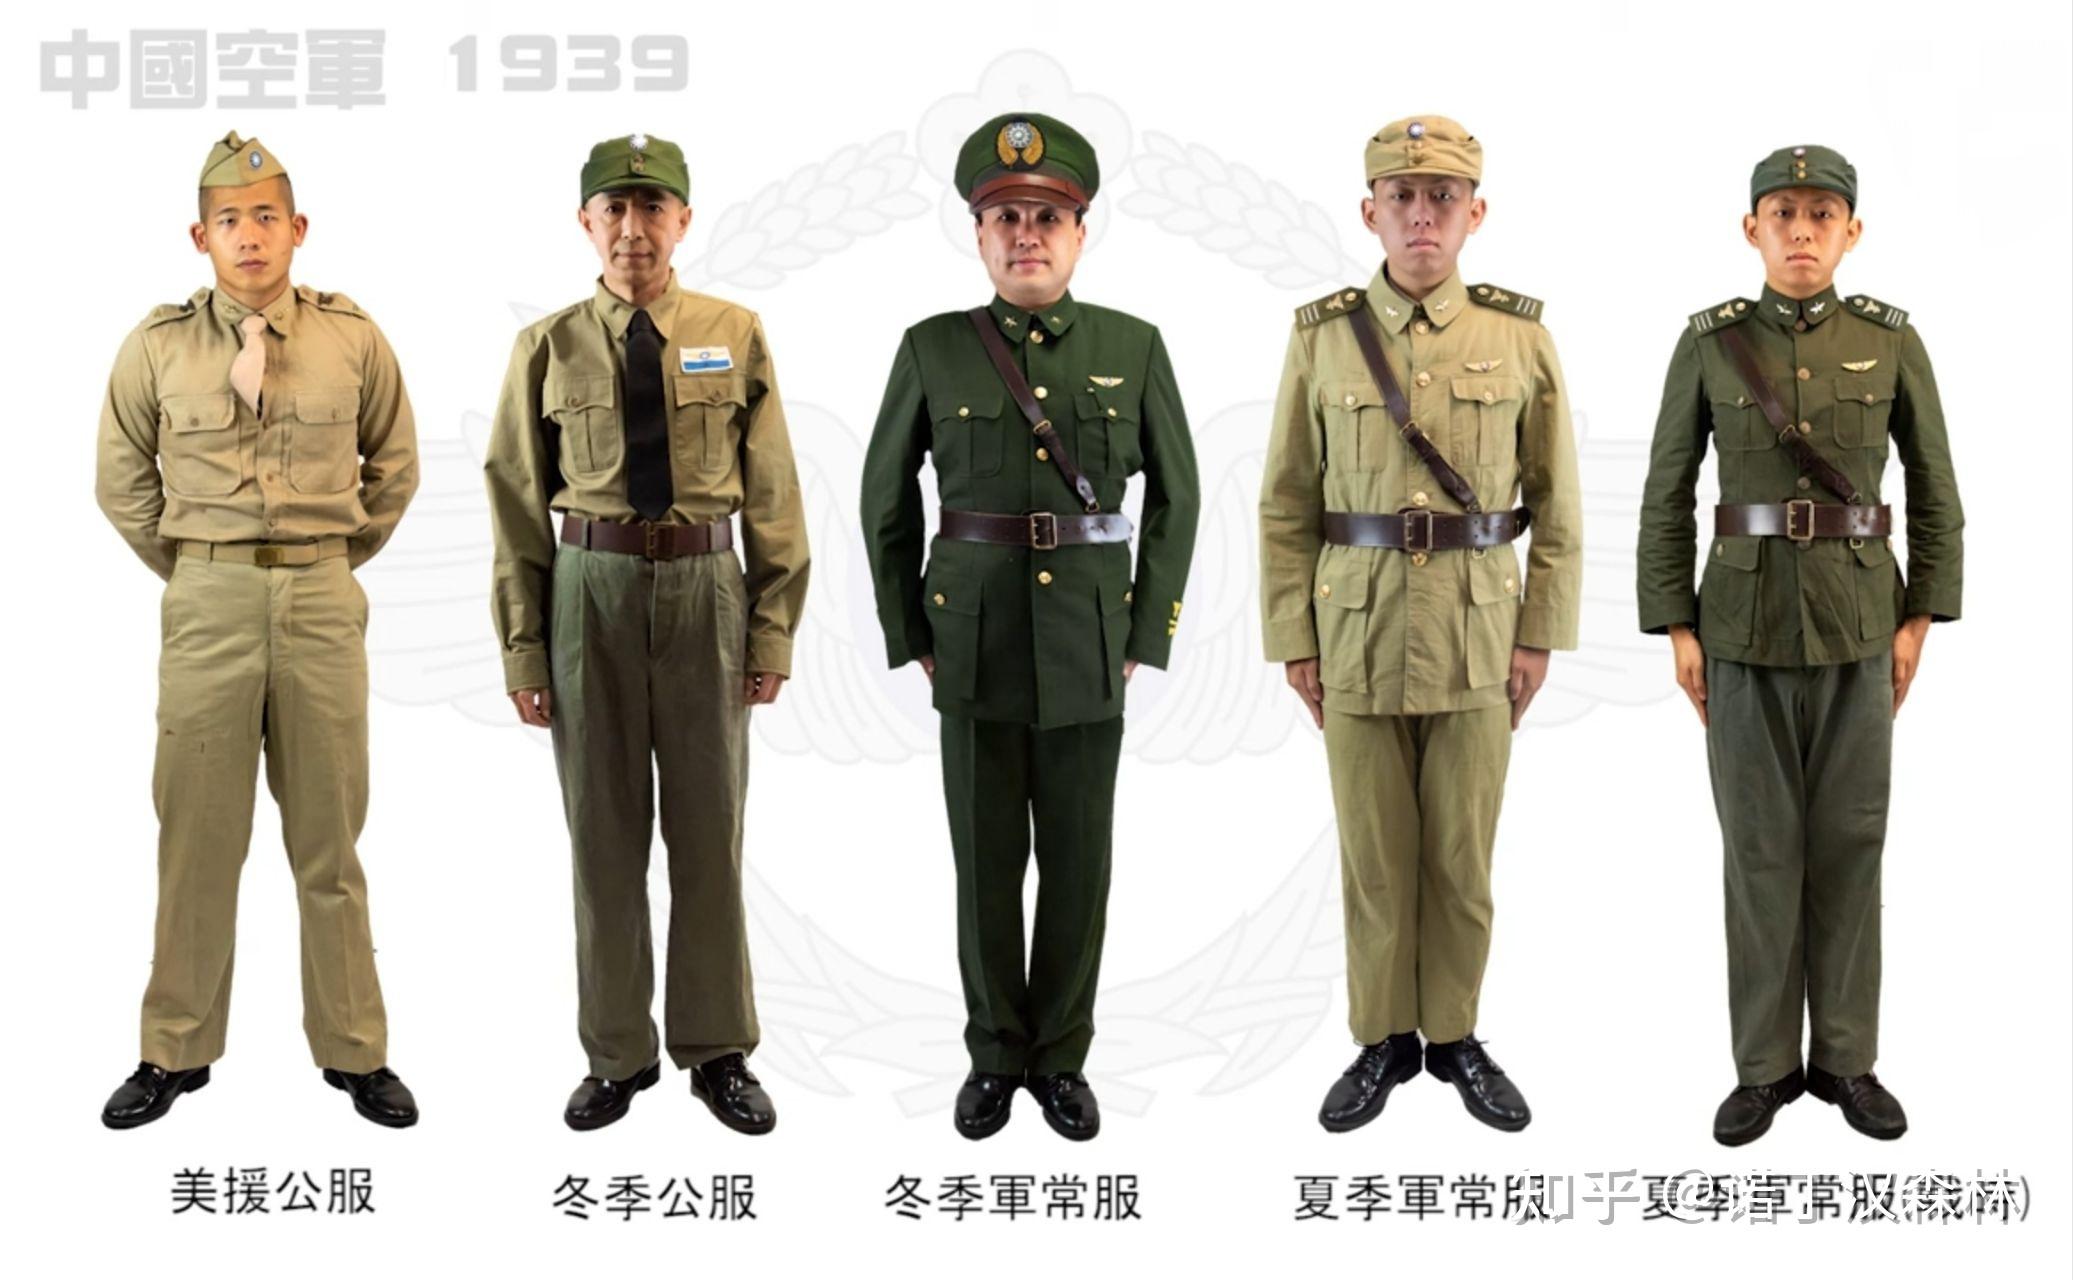 他身上穿着的军服和后面陆军军官的军服之间的差别,1939年后,空军士官